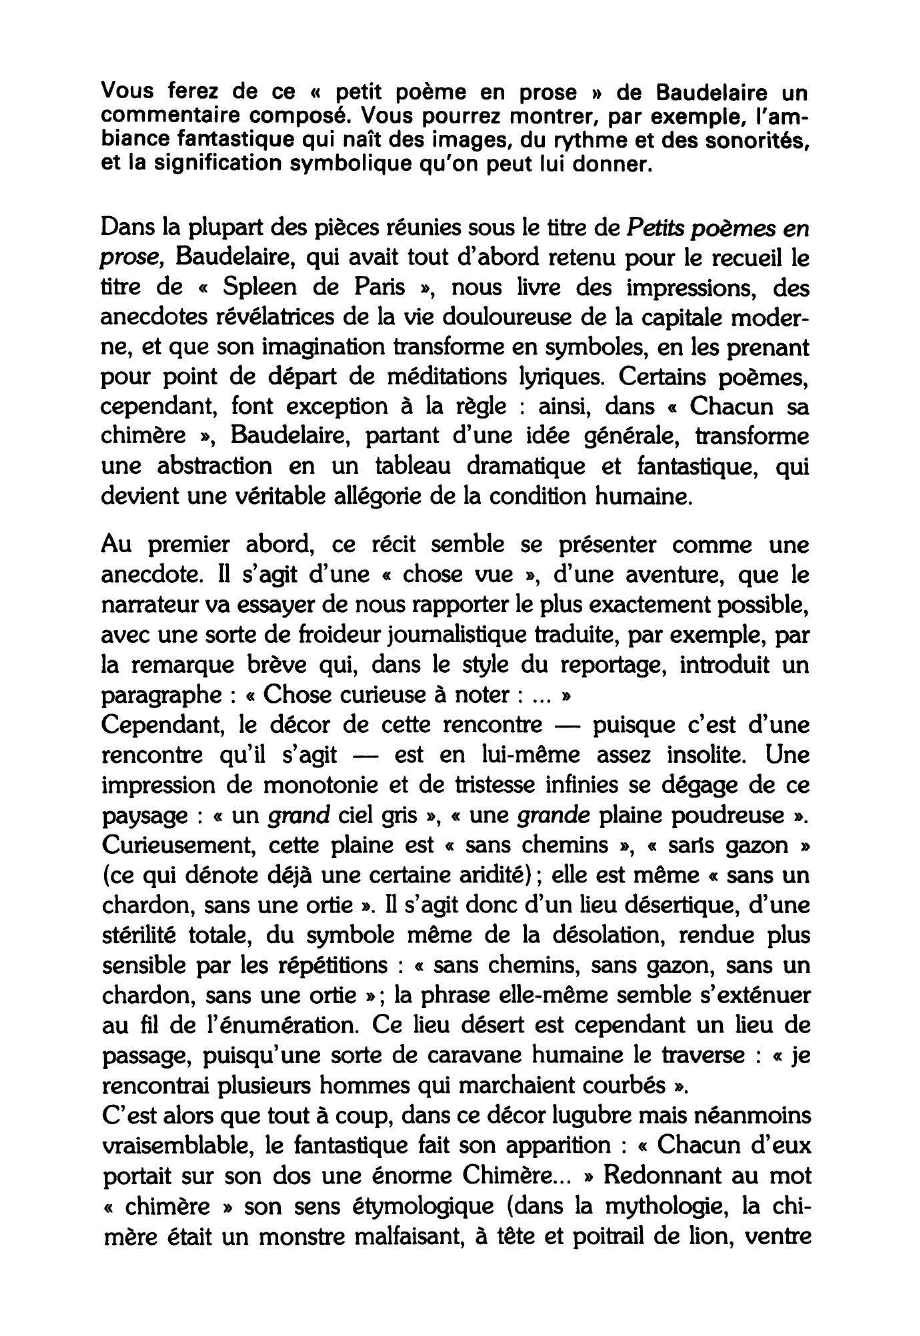 Prévisualisation du document CHACUN SA CHIMÈRE - BAUDELAIRE (commentaire composé)